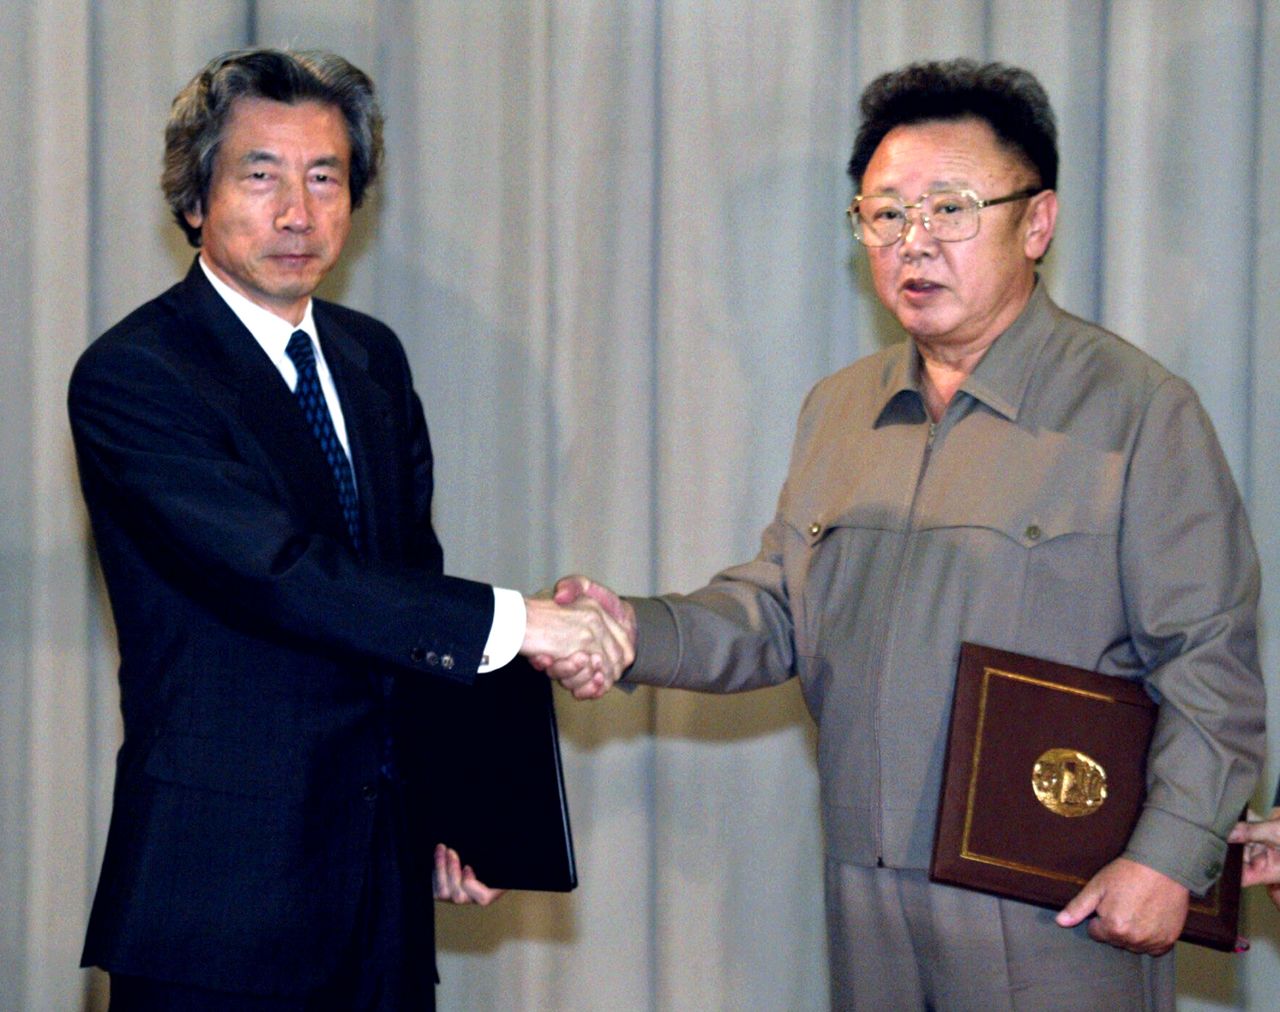 زيارة كويزومي إلى كوريا الشمالية في 17/9/2002 (© رويترز)